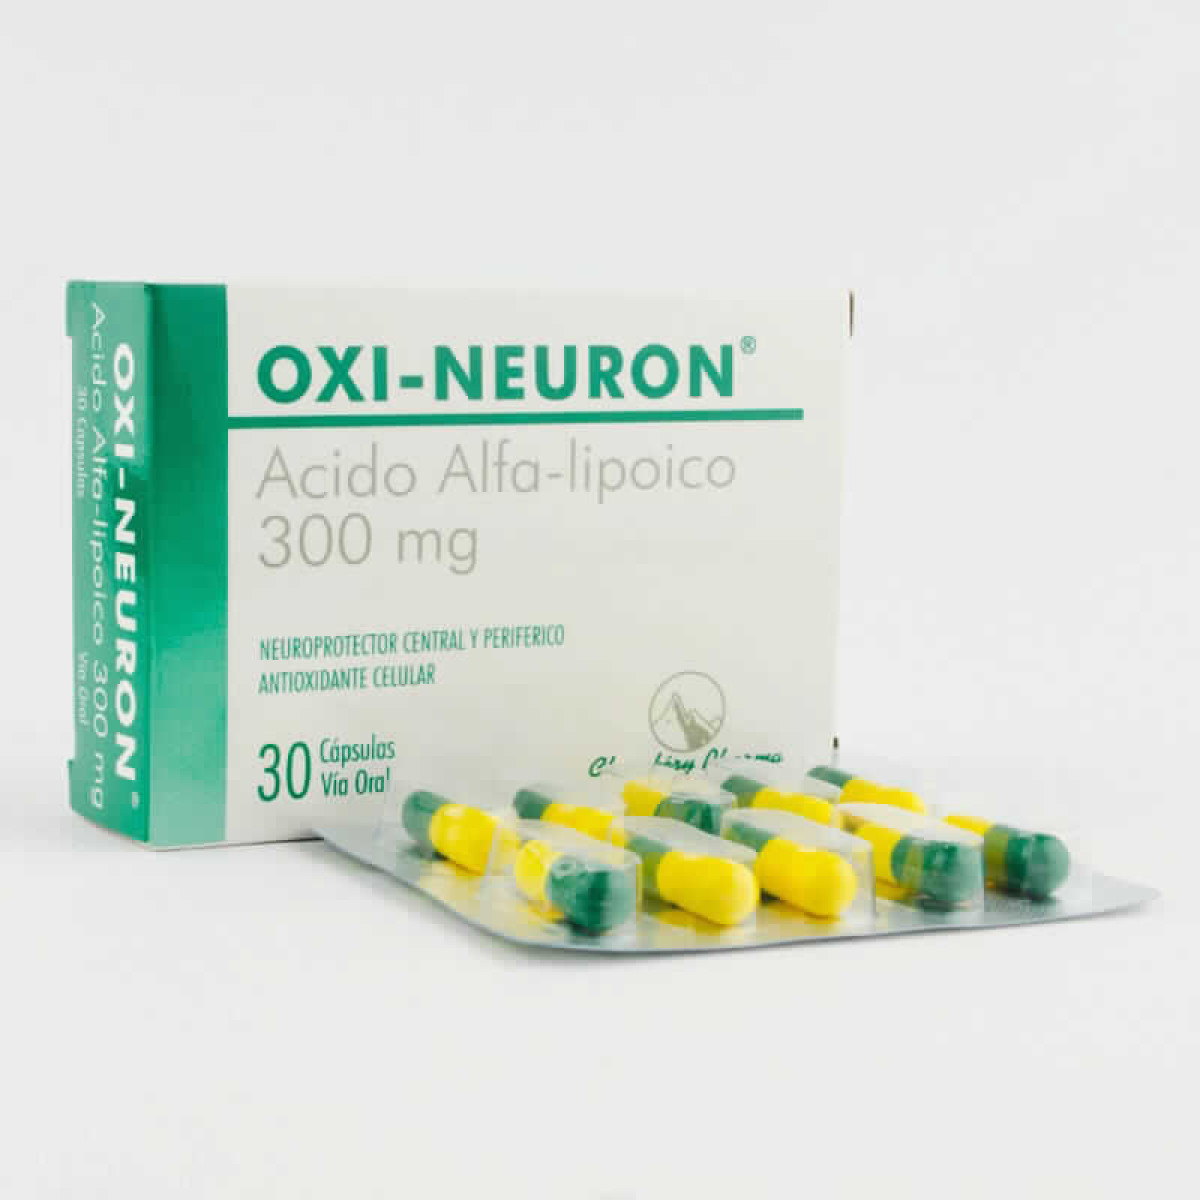 OXI-NEURON X 30 CAPS